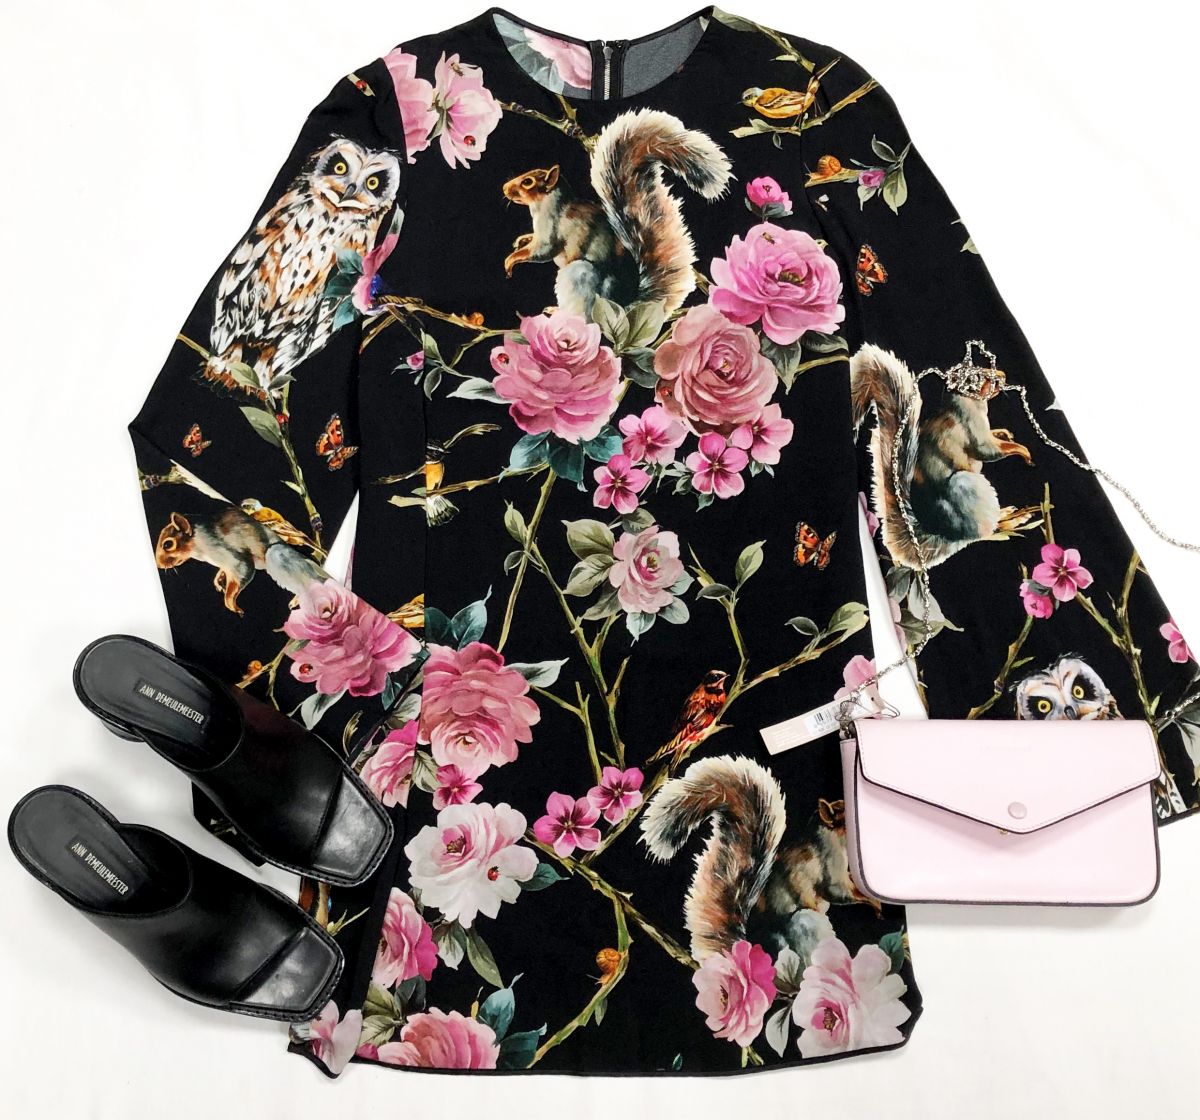 Платье Dolce Gabbana размер 40 цена 15 385 рубСабо Ann Demeulemeester размер 38.5 цена 15 385 рубСумка Coccinelle